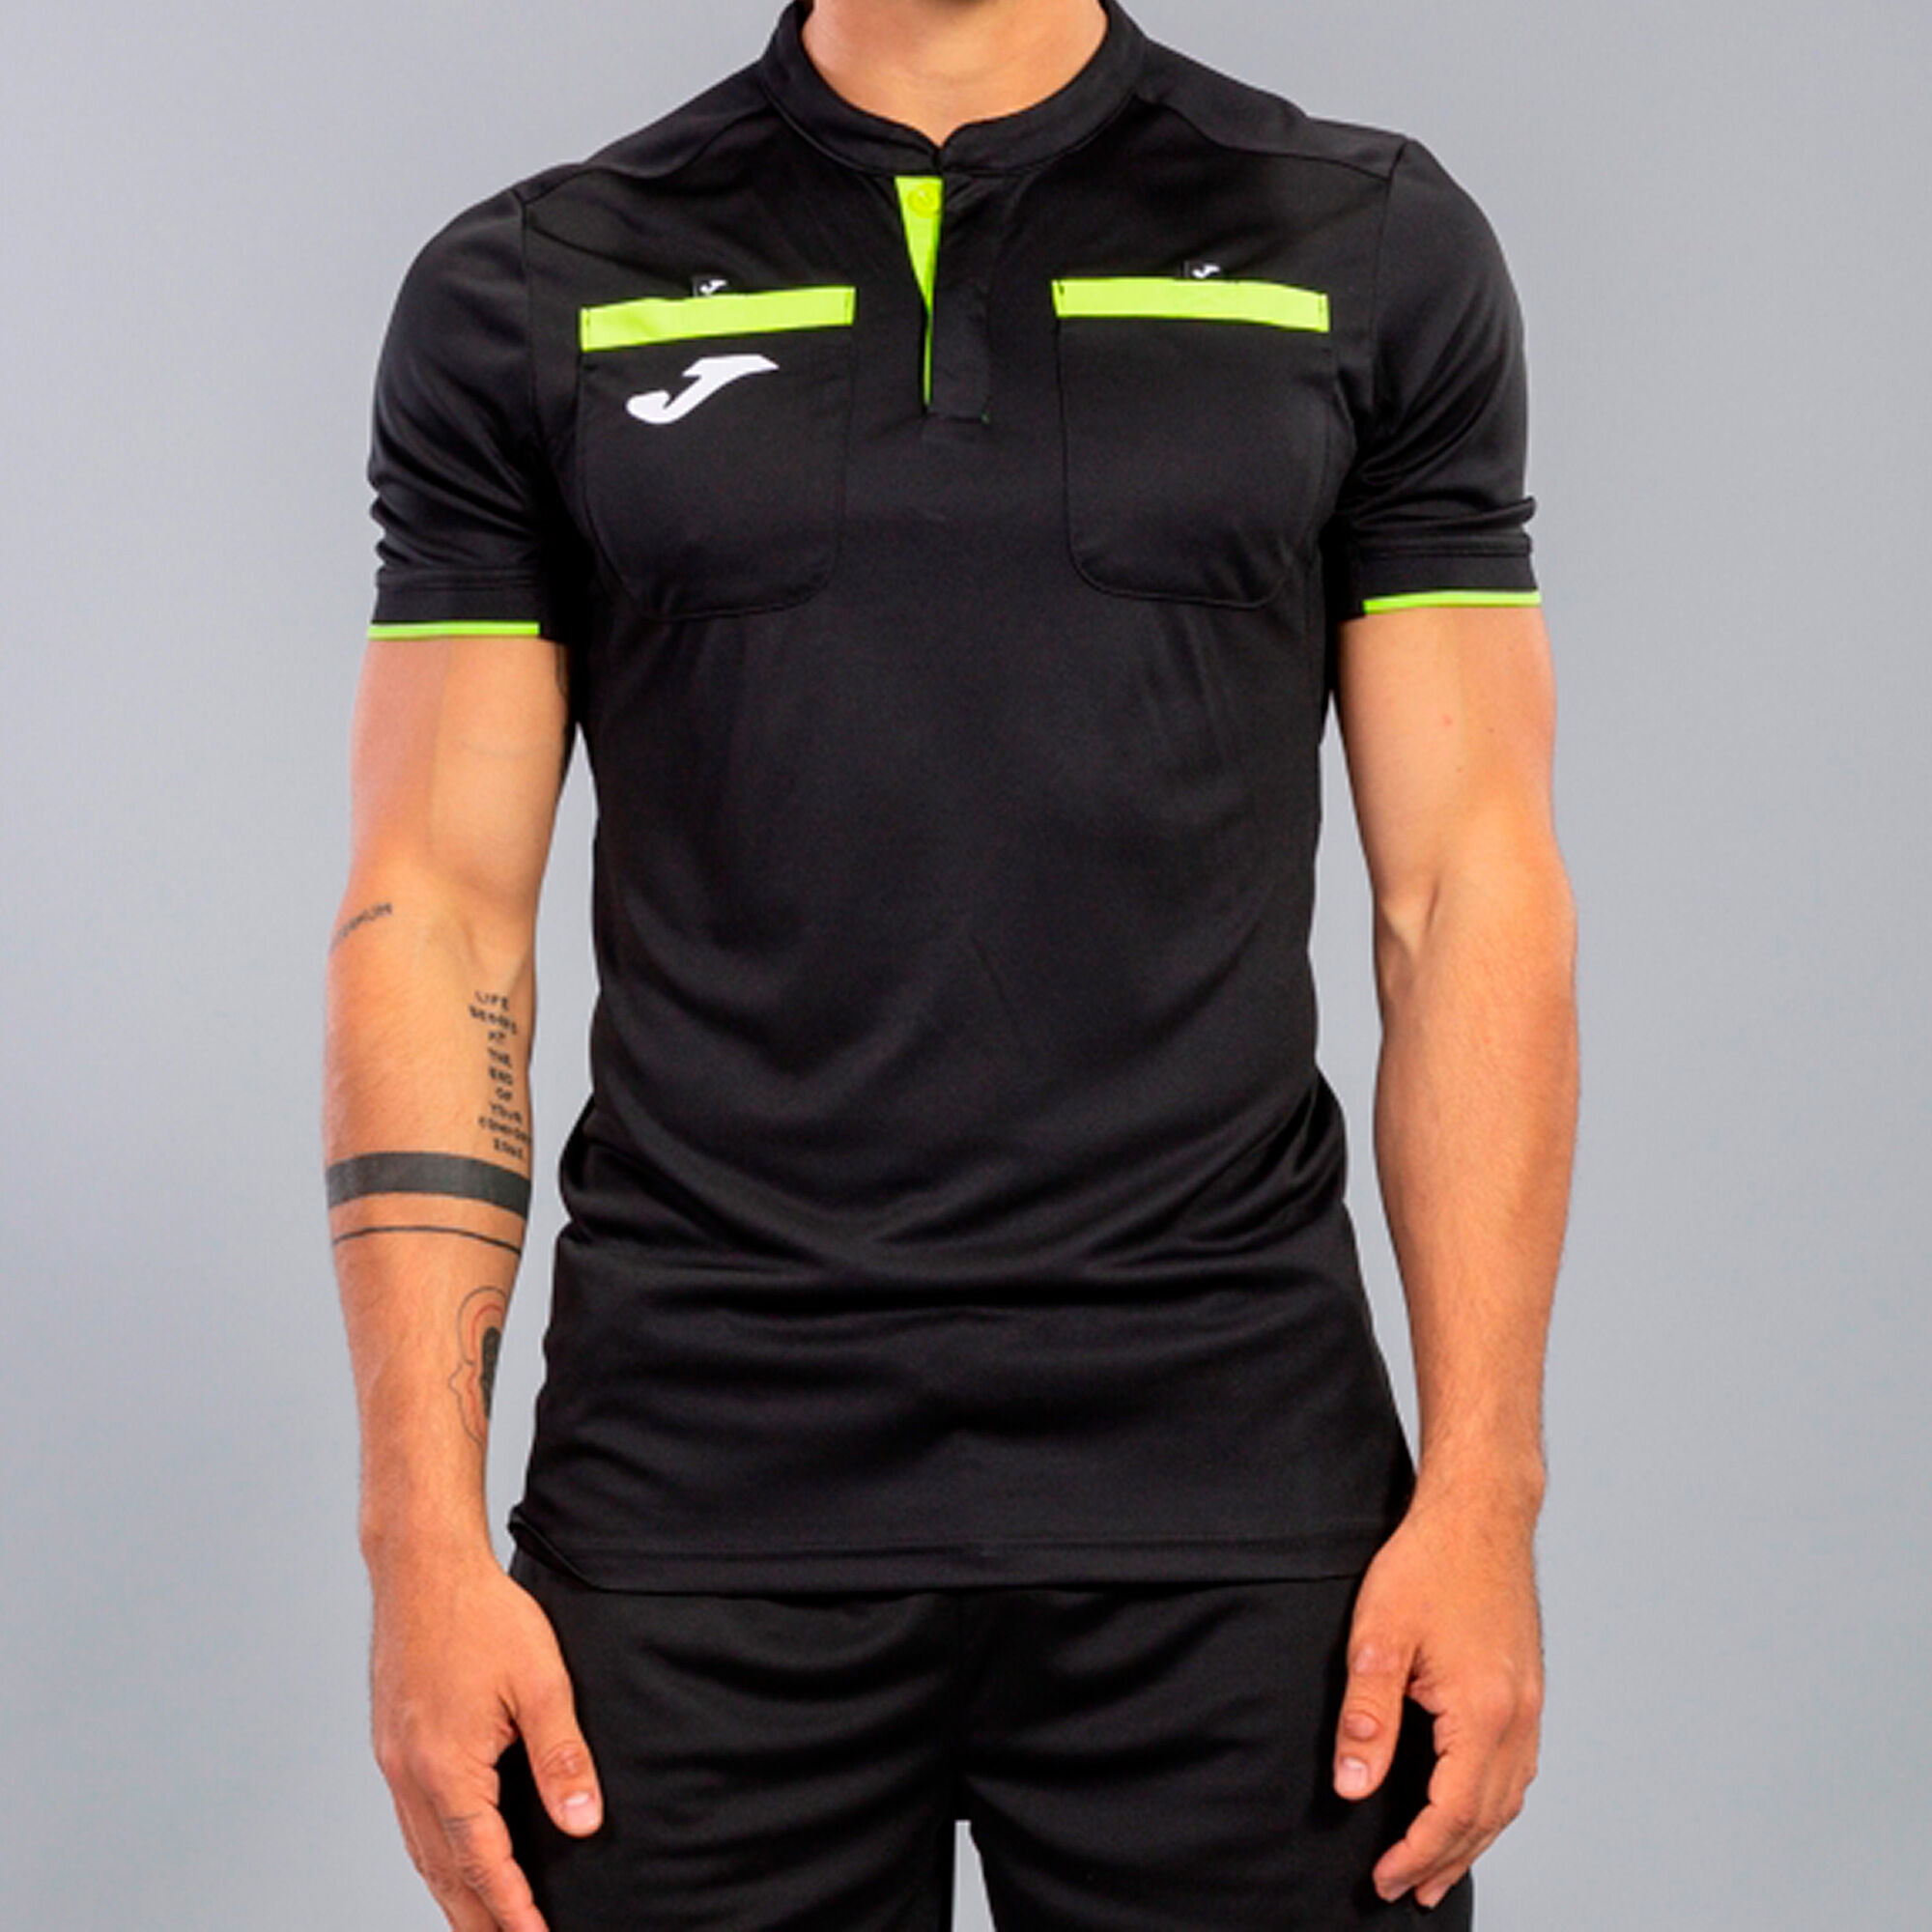 Camiseta Arbitro Joma Respect II - Tienda online de material deportivo y  equipaciones - Suministros Deportivos